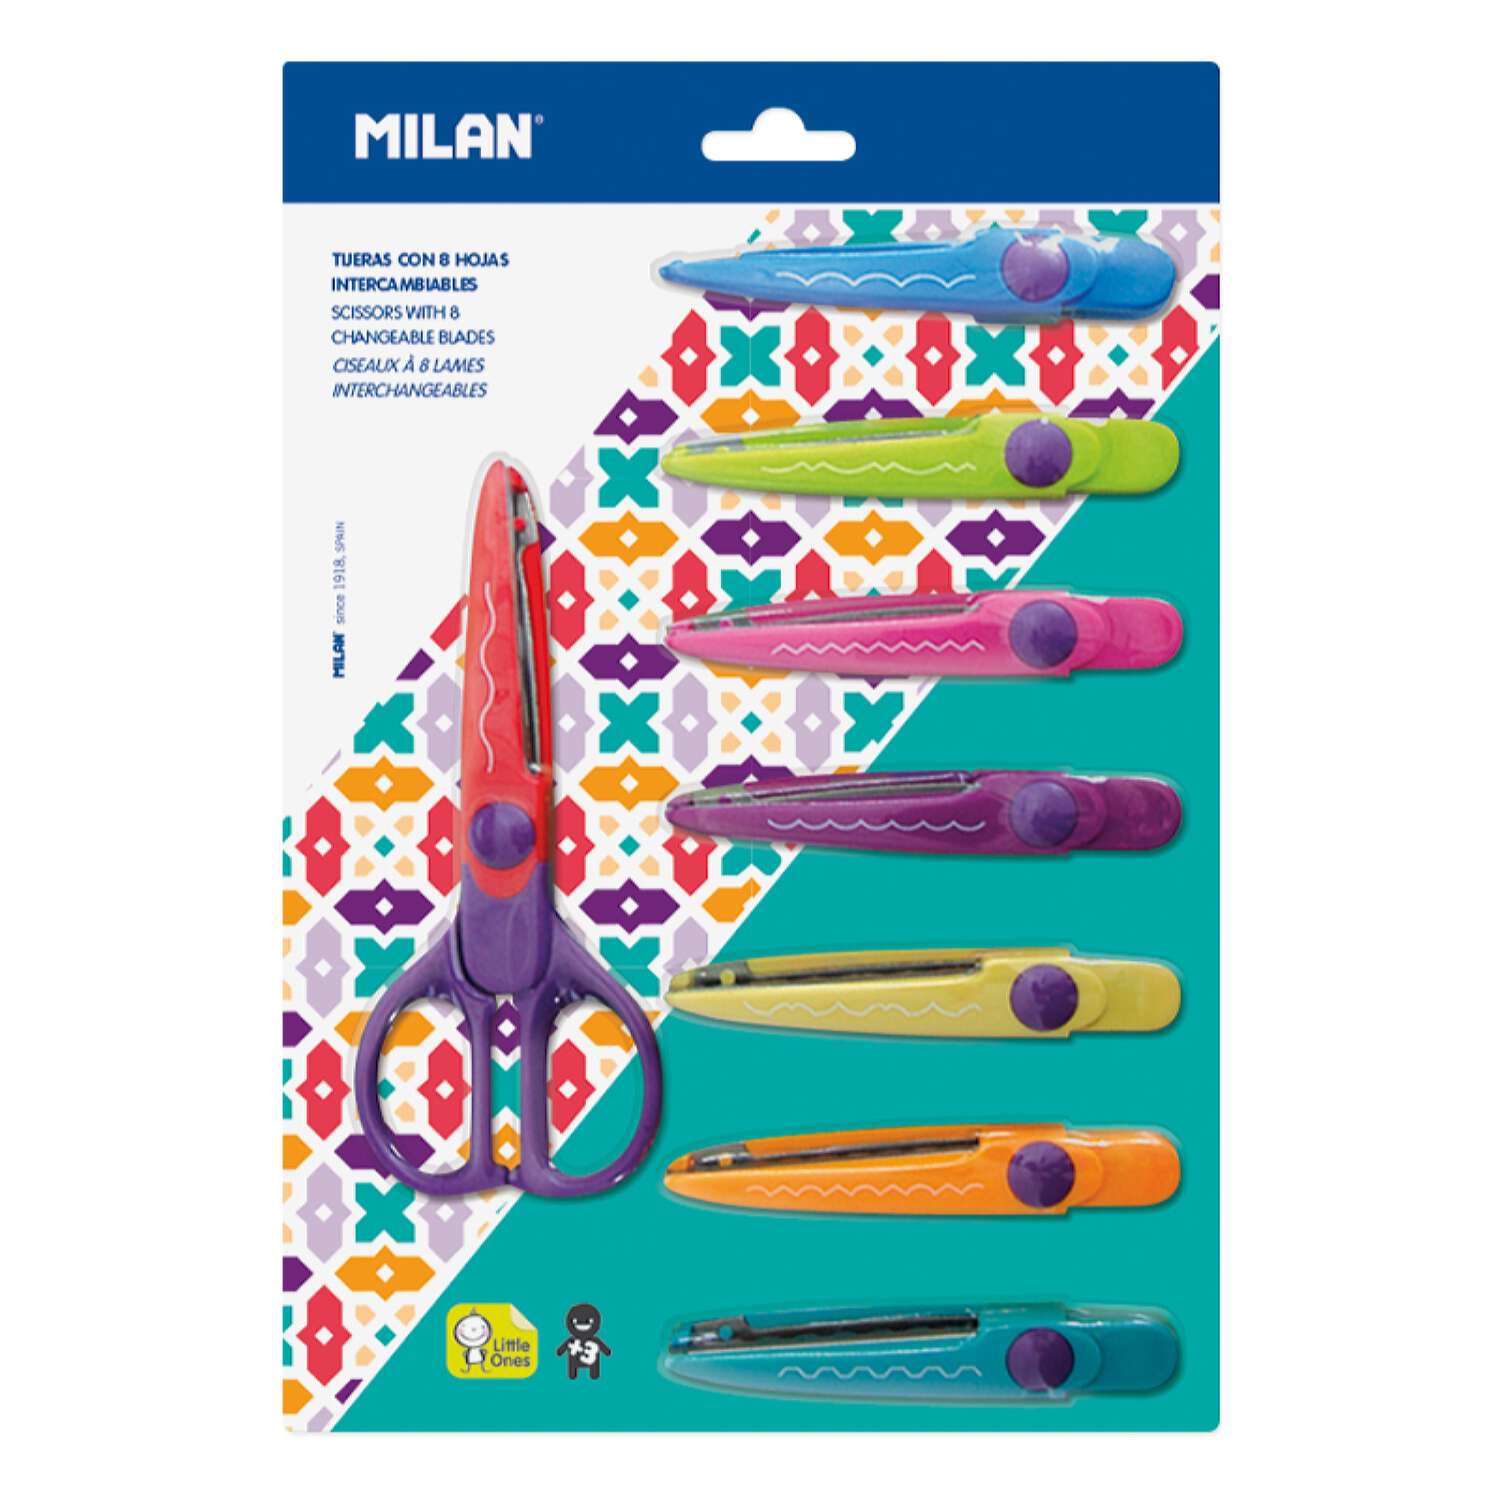 Набор фигурных ножниц MILAN для рукоделия и творчества 8 зигзагообразных насадок цветной пластиковый корпус в блистере - фото 1